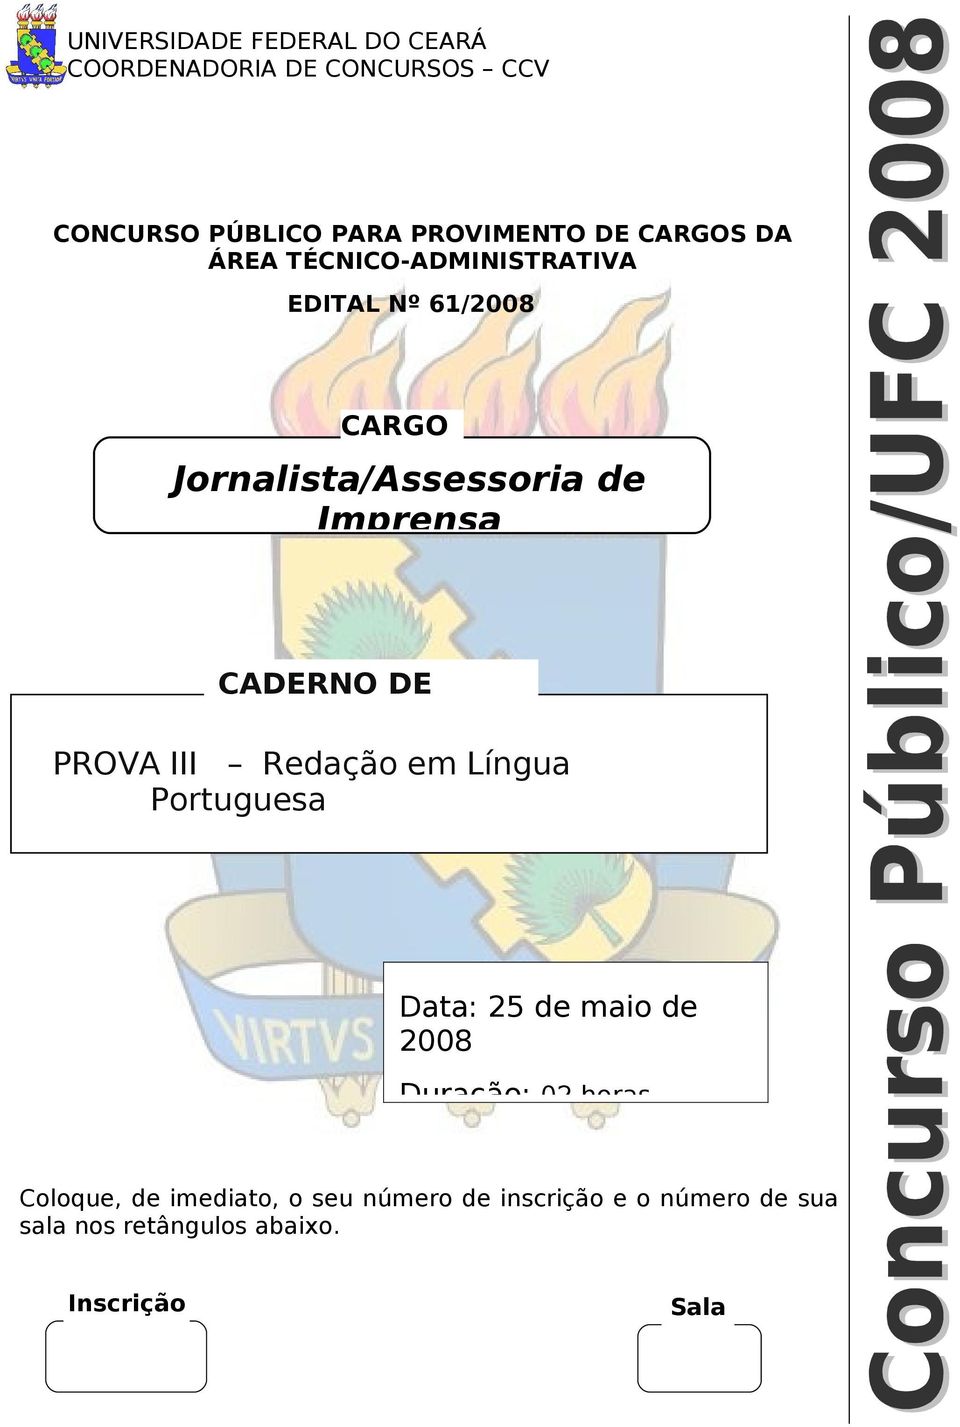 CADERNO DE PROVAS PROVA III Redação em Língua Portuguesa Data: 25 de maio de 2008 Duração: 02 horas